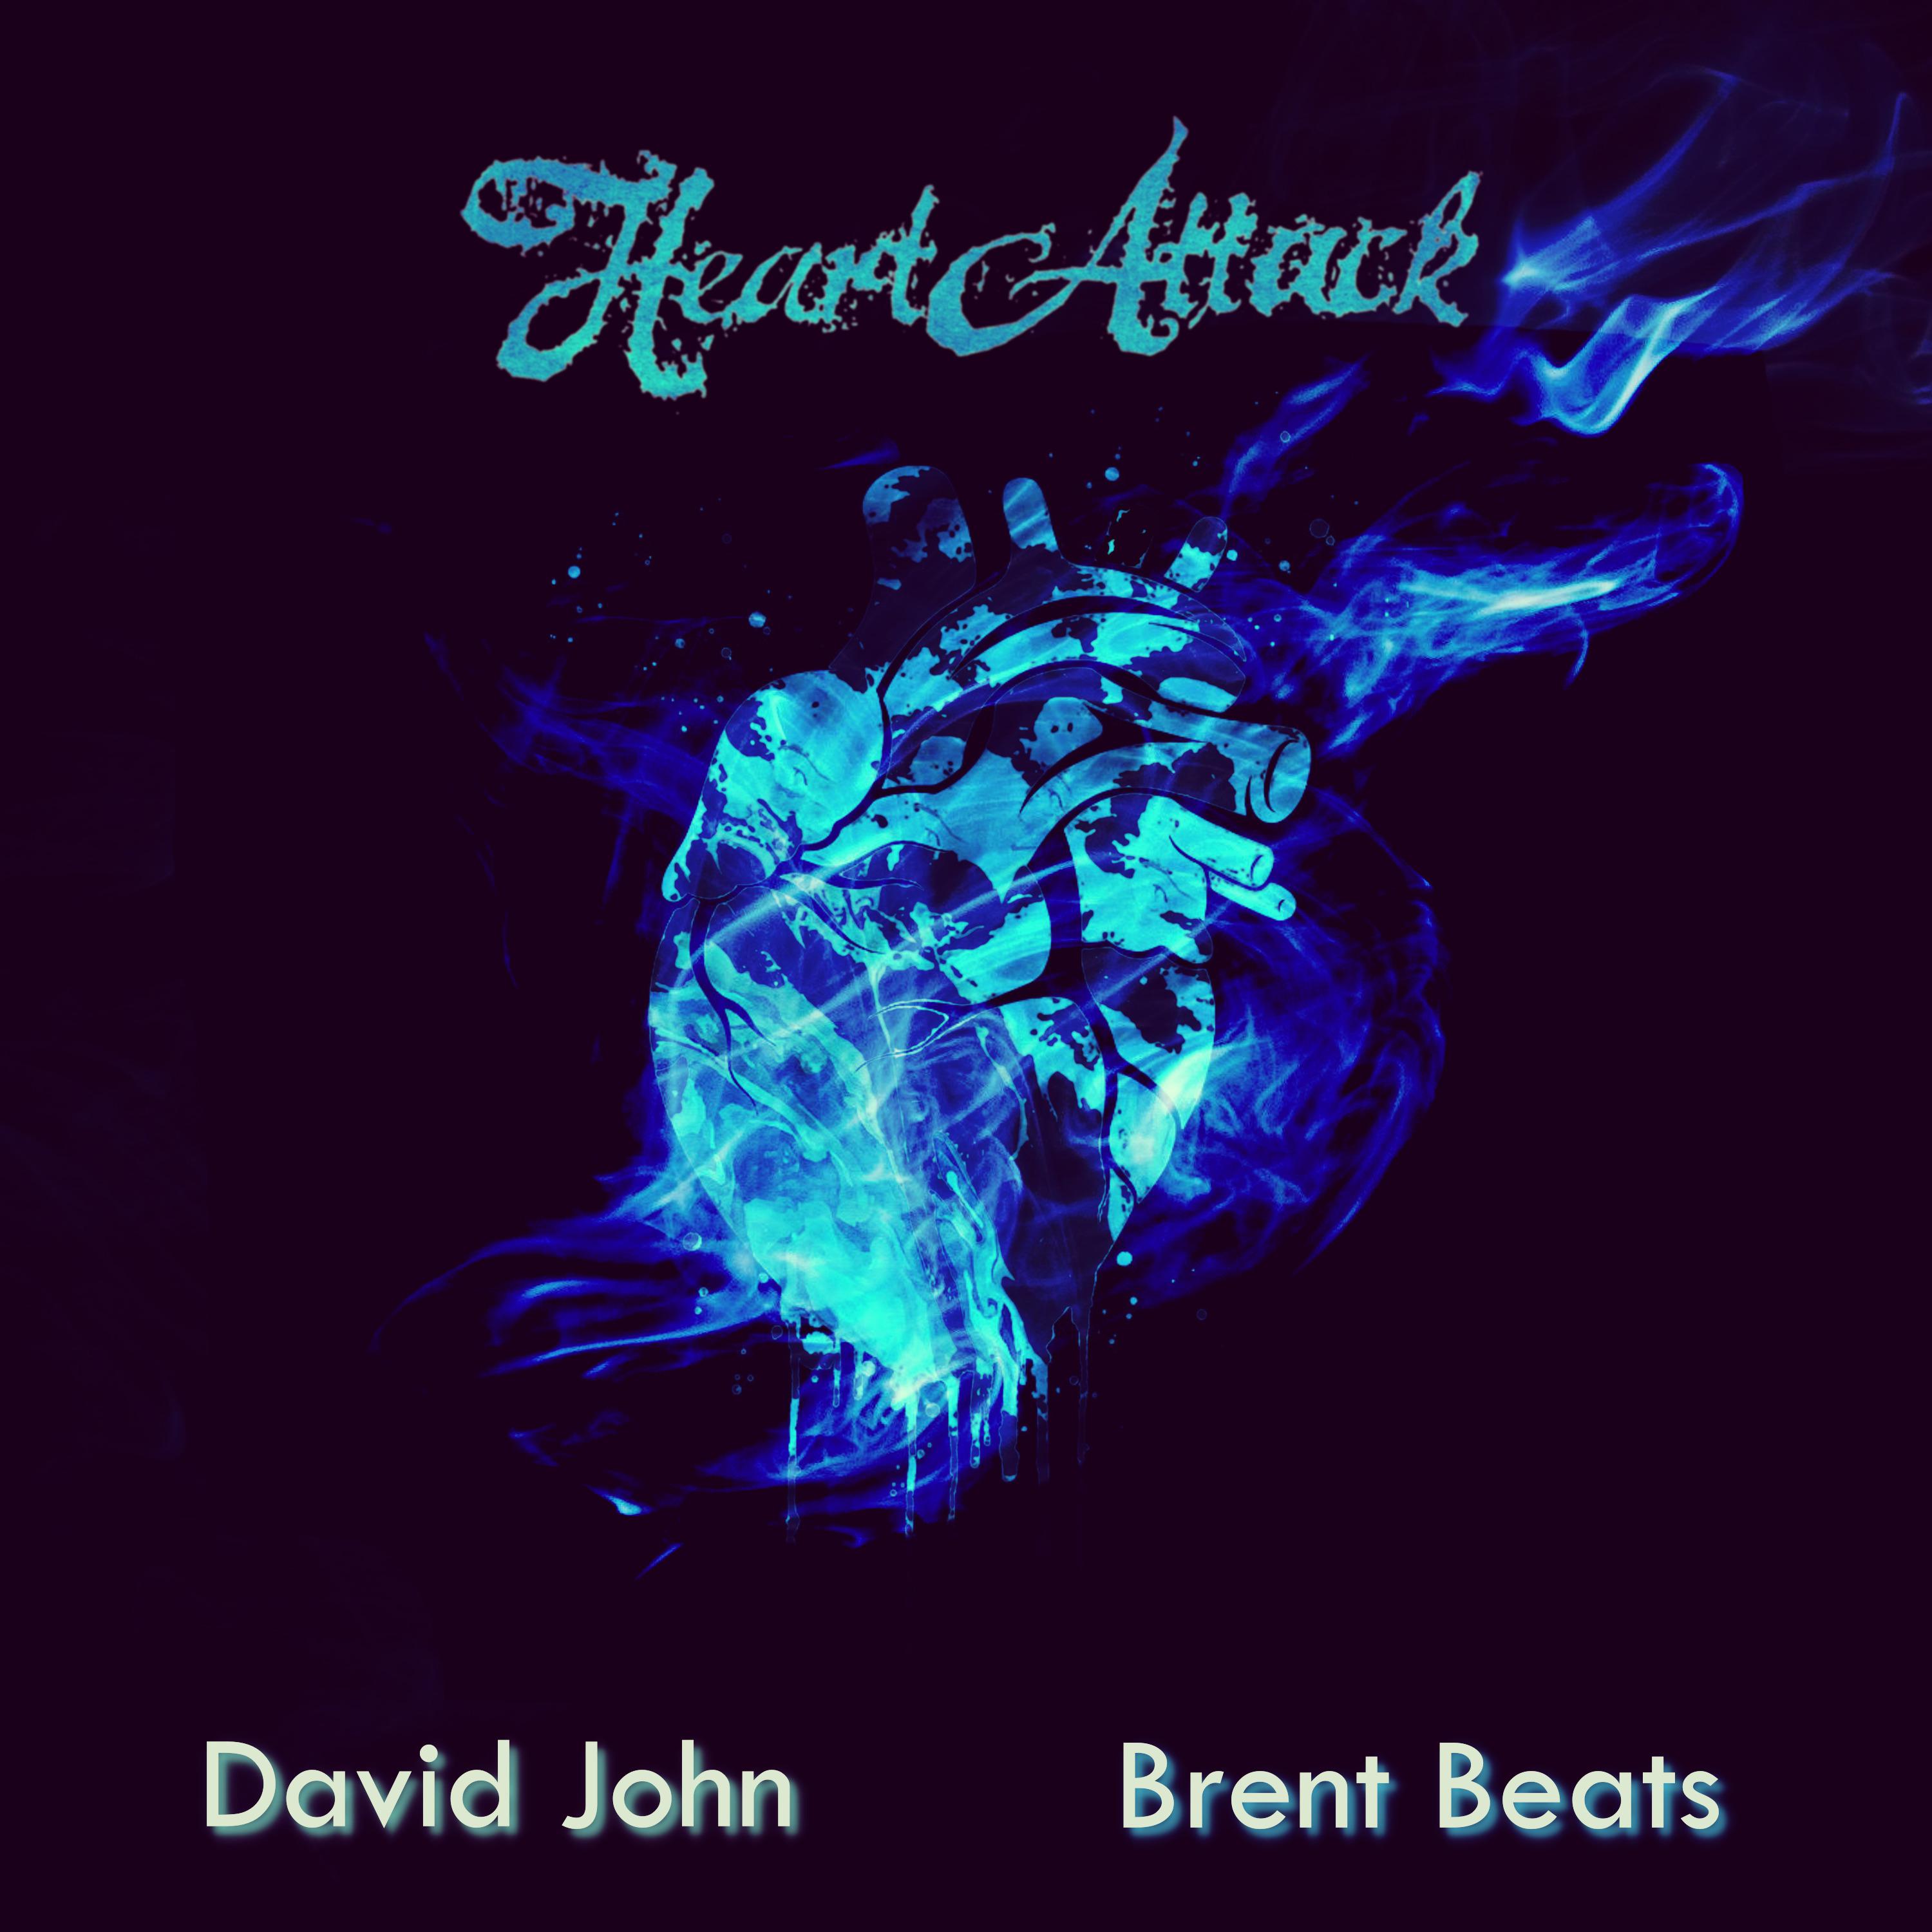 David John - Heart Attack